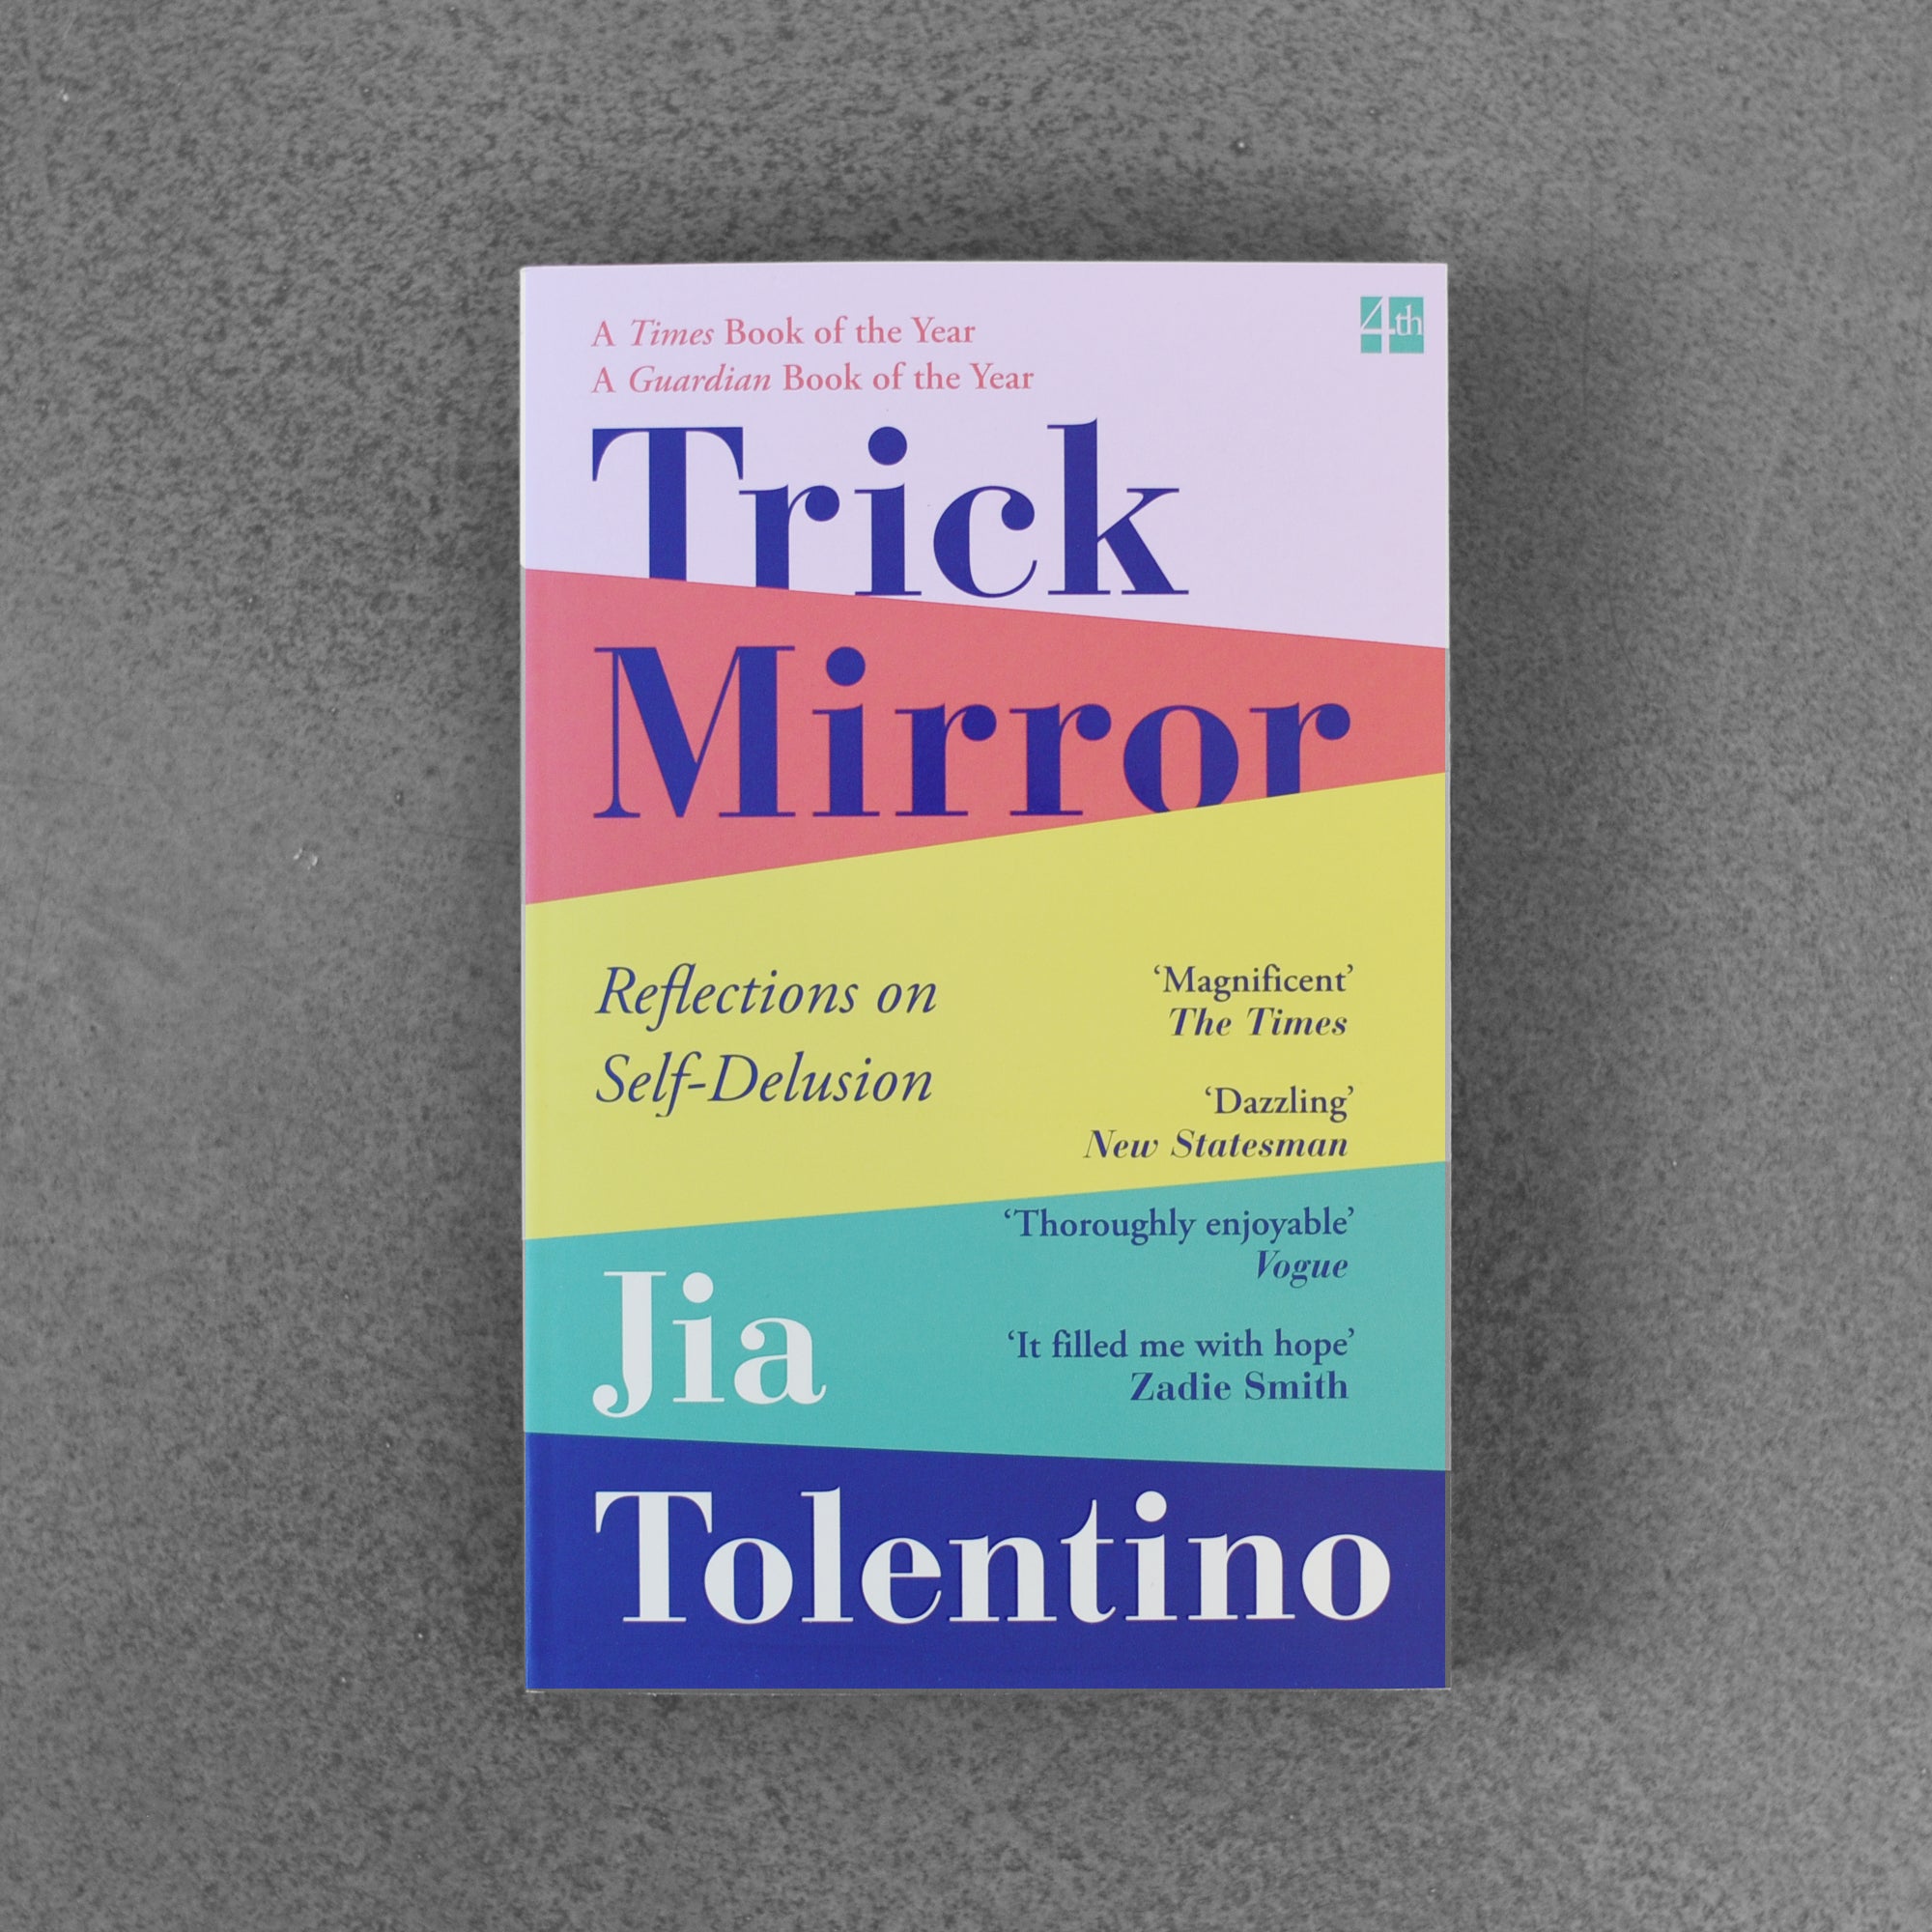 trick mirror jia tolentino